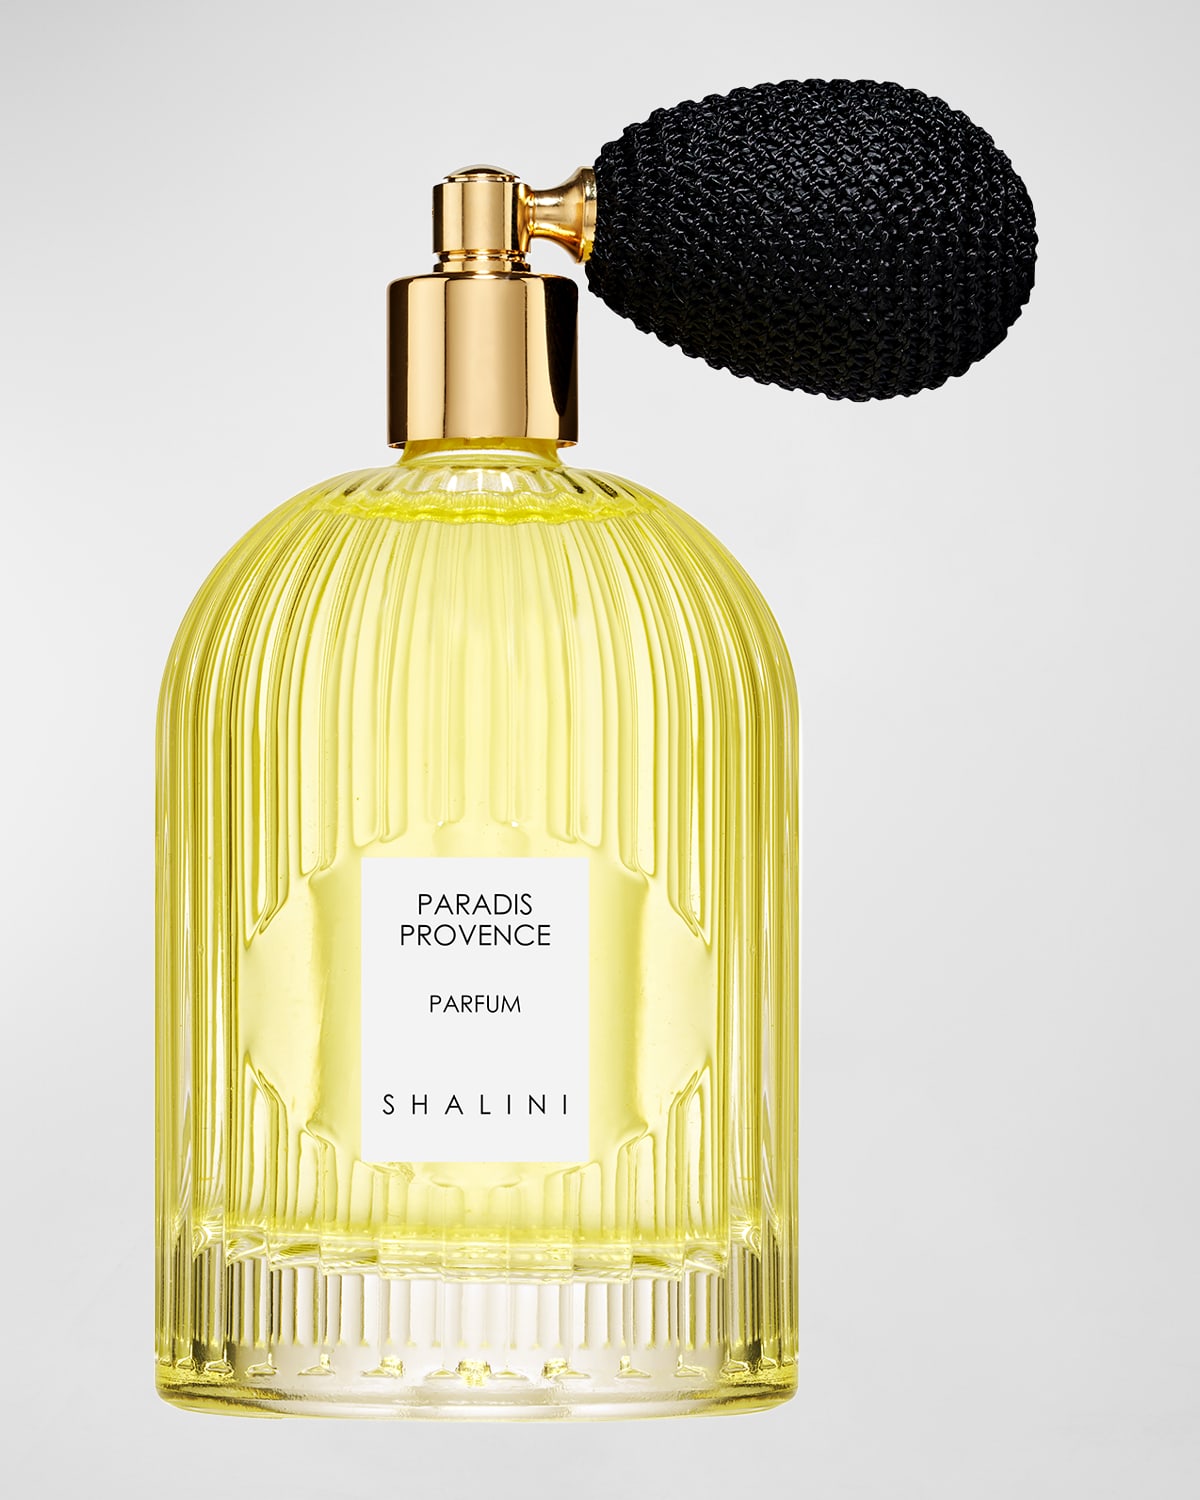 Paradis Provence Parfum in Byzantine Glass Flacon w/ Black Bulb Atomizer, 3.4 oz.